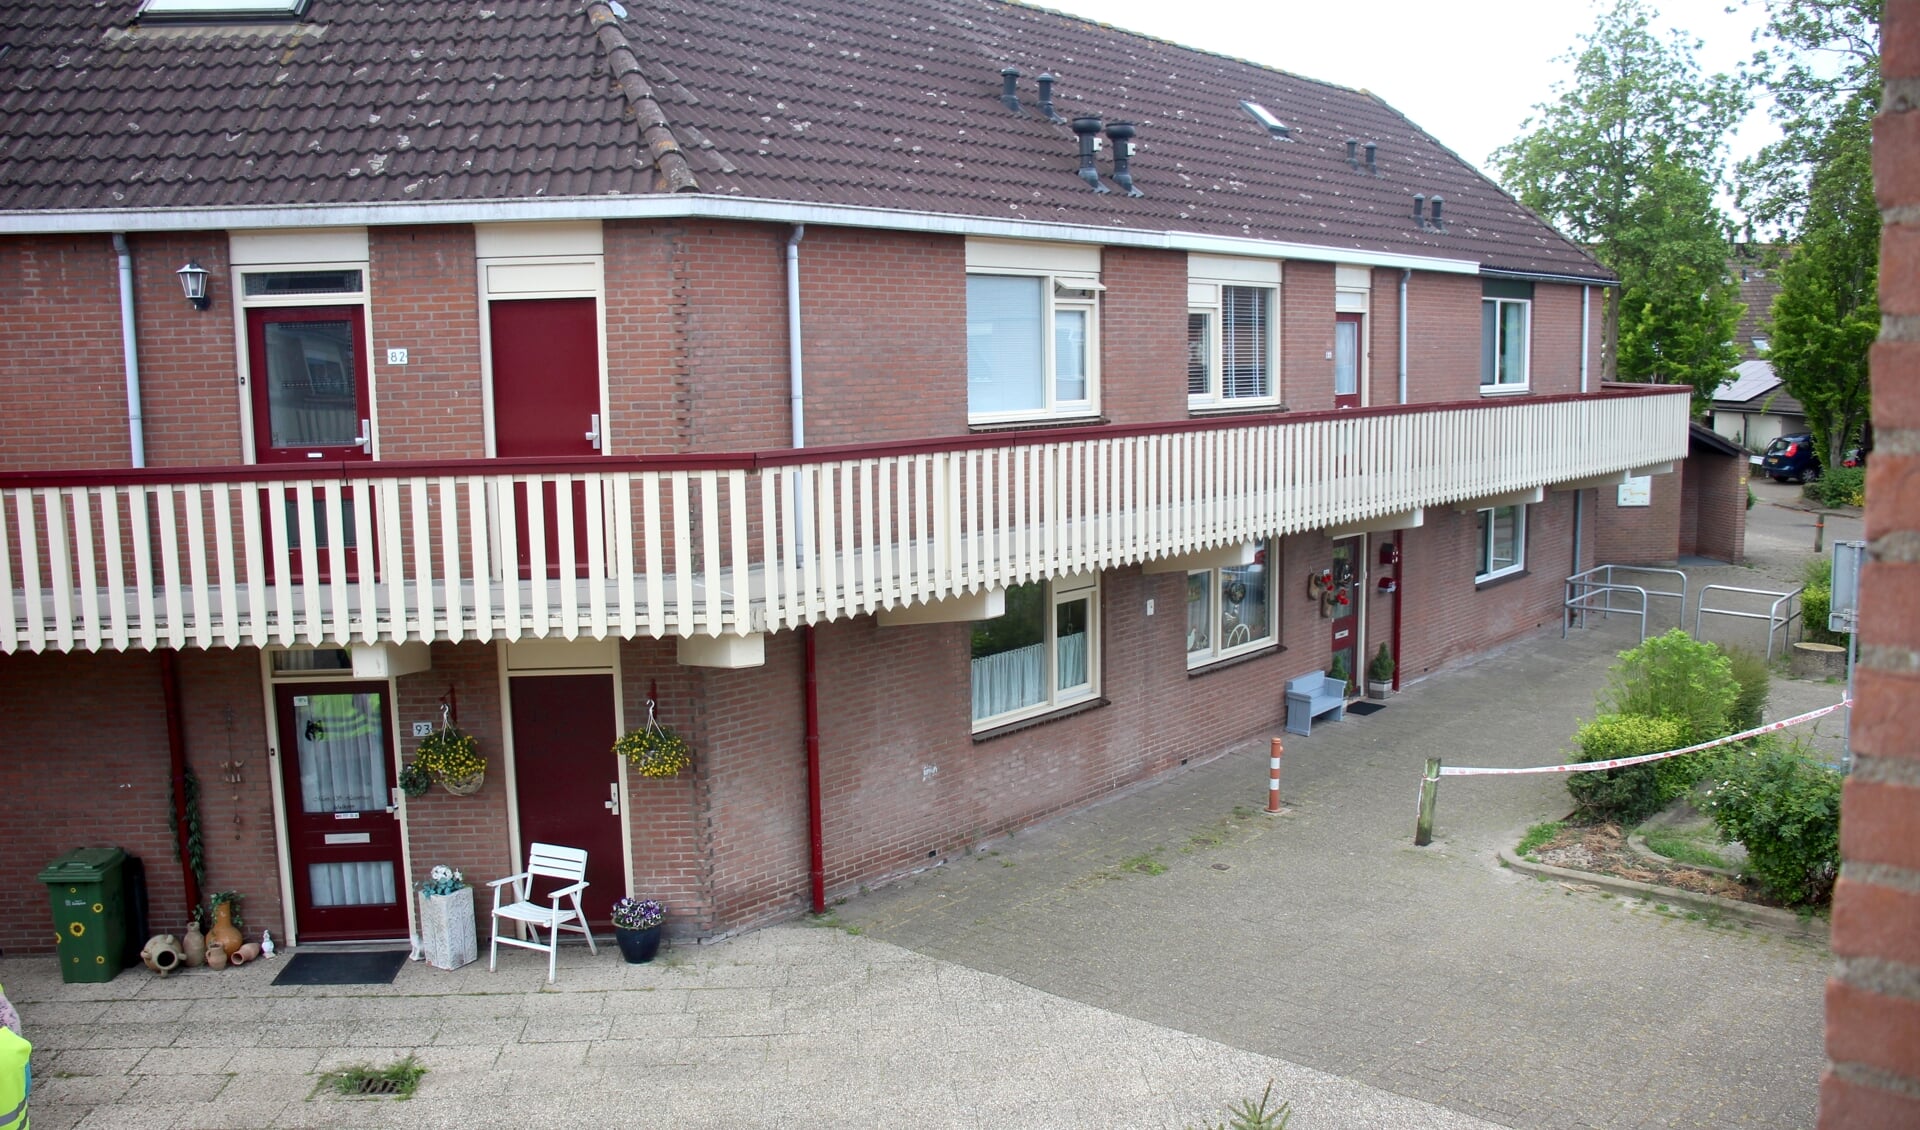 Sociale huurwoningen aan de Valkendaal in Nieuwerkerk.